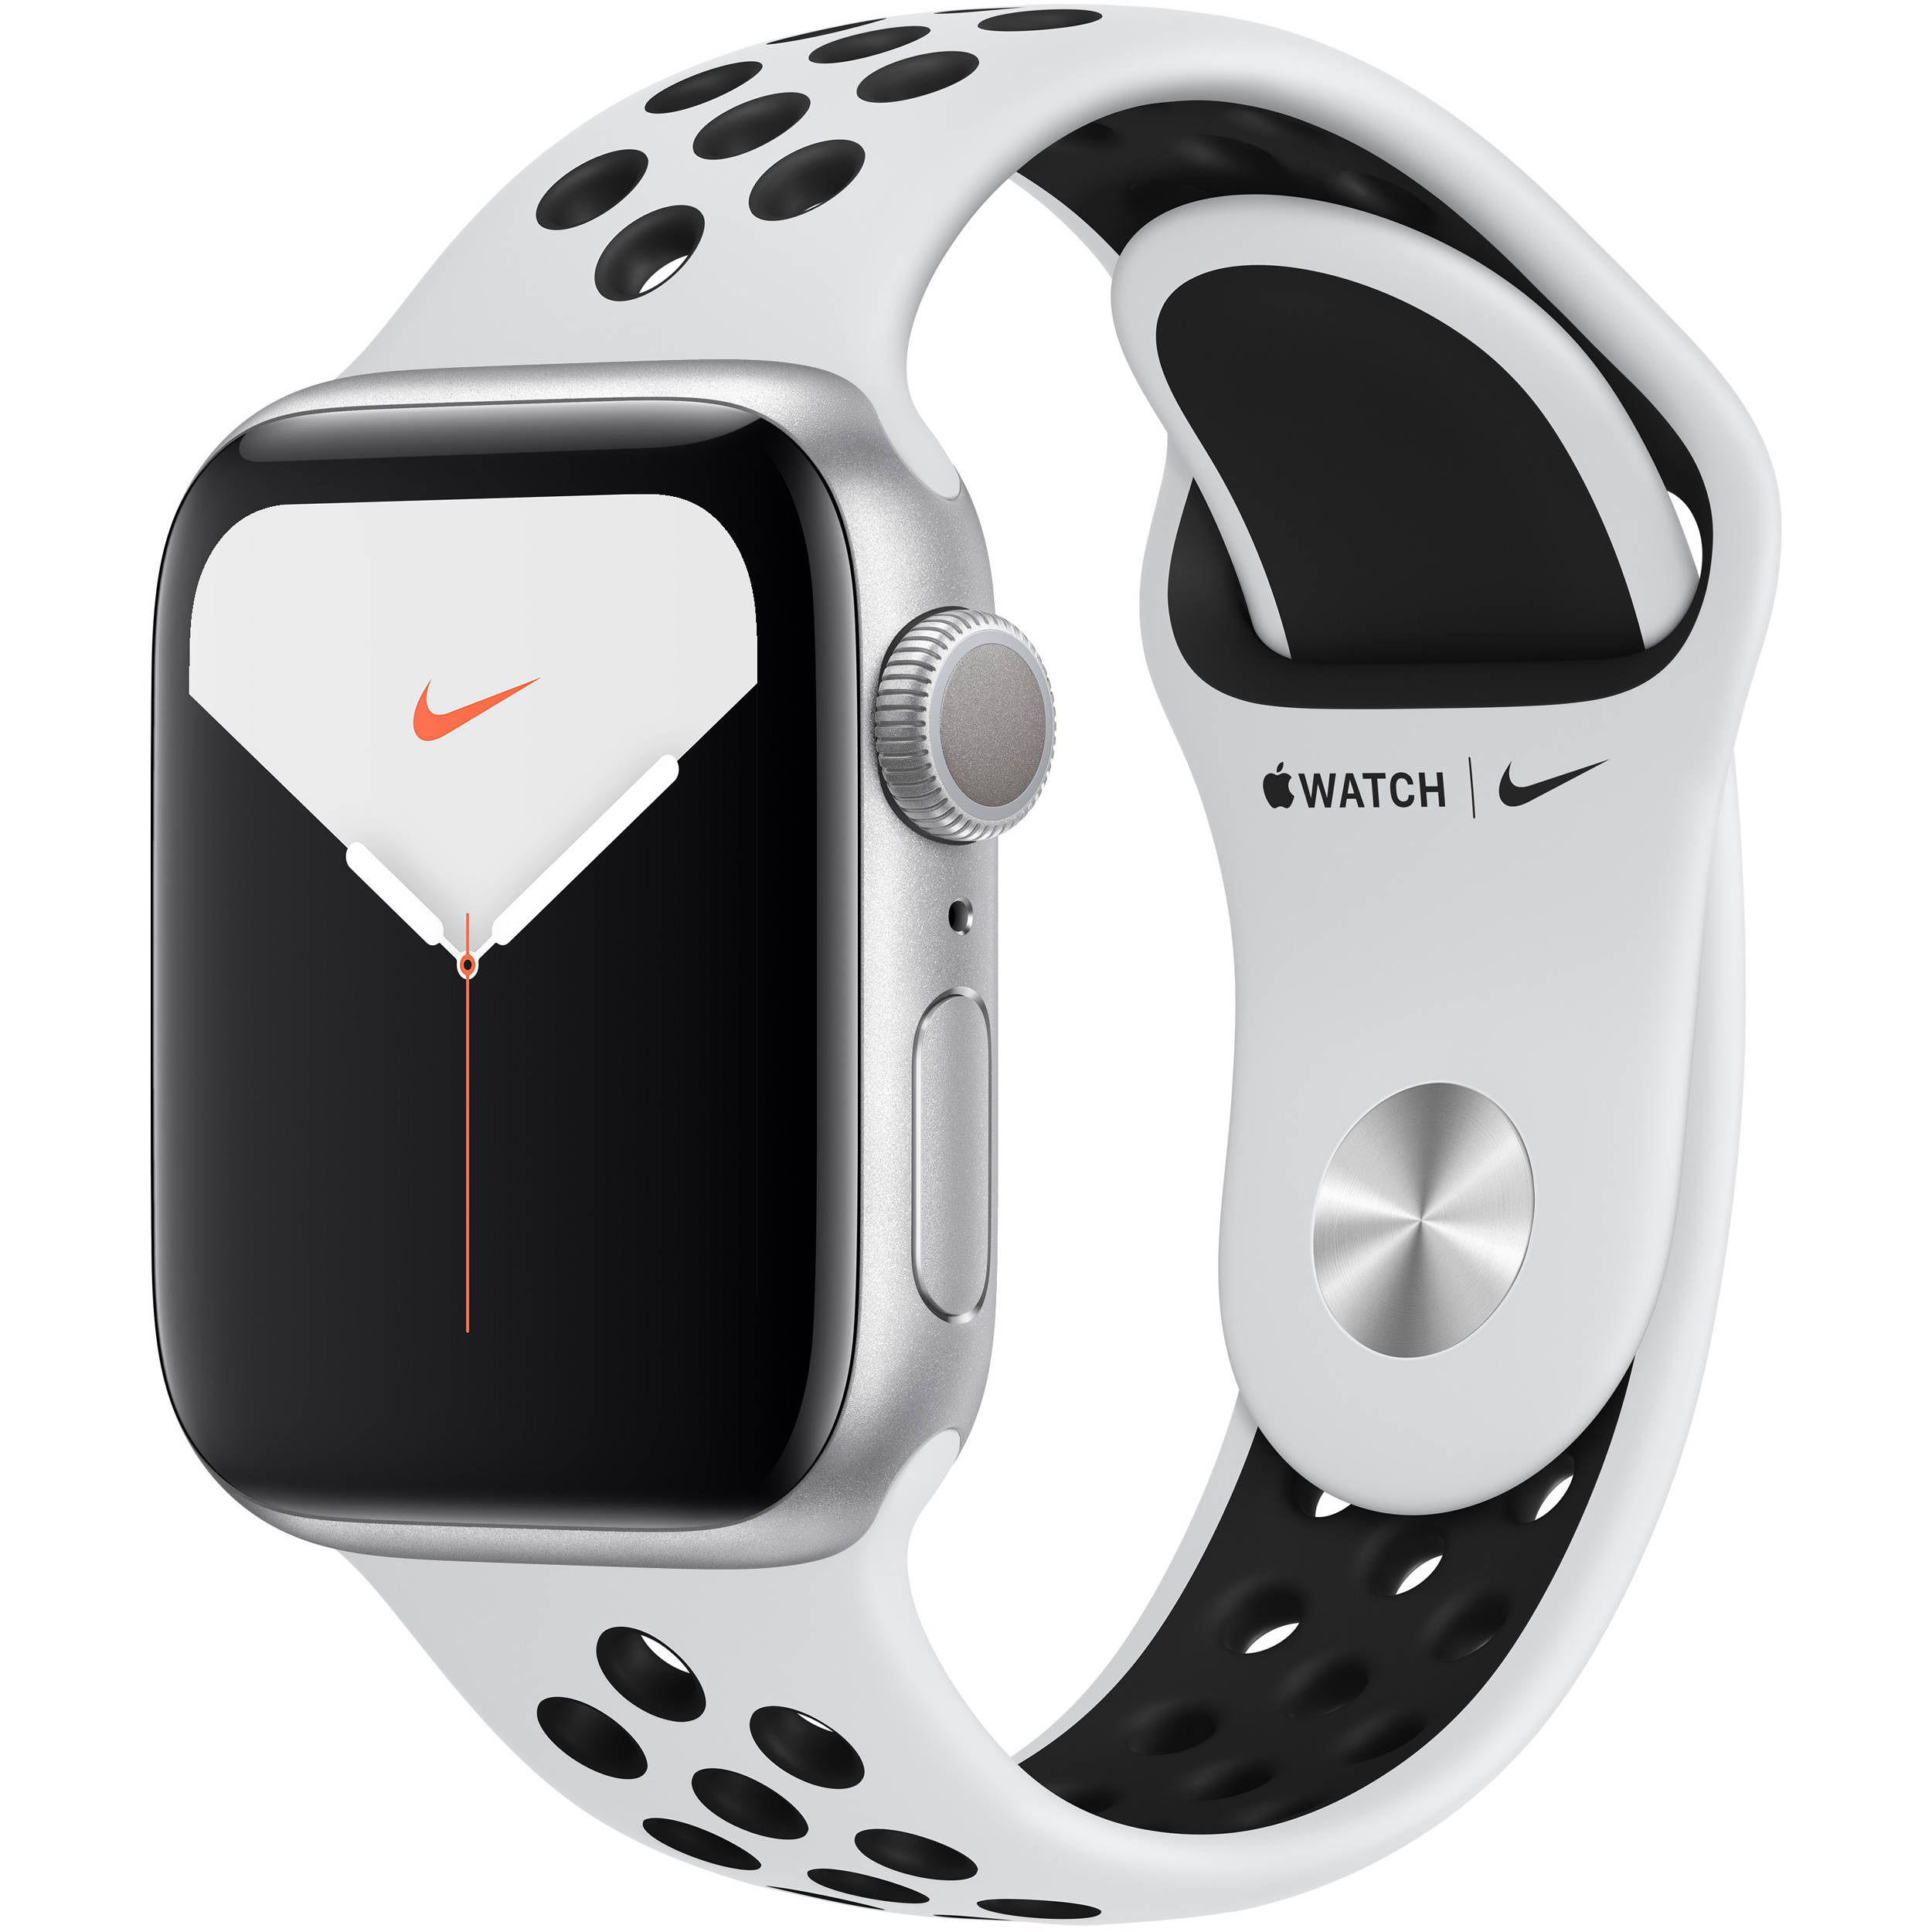 Buy Apple Watch Series 5 NIKE Edition at best price in Kenya